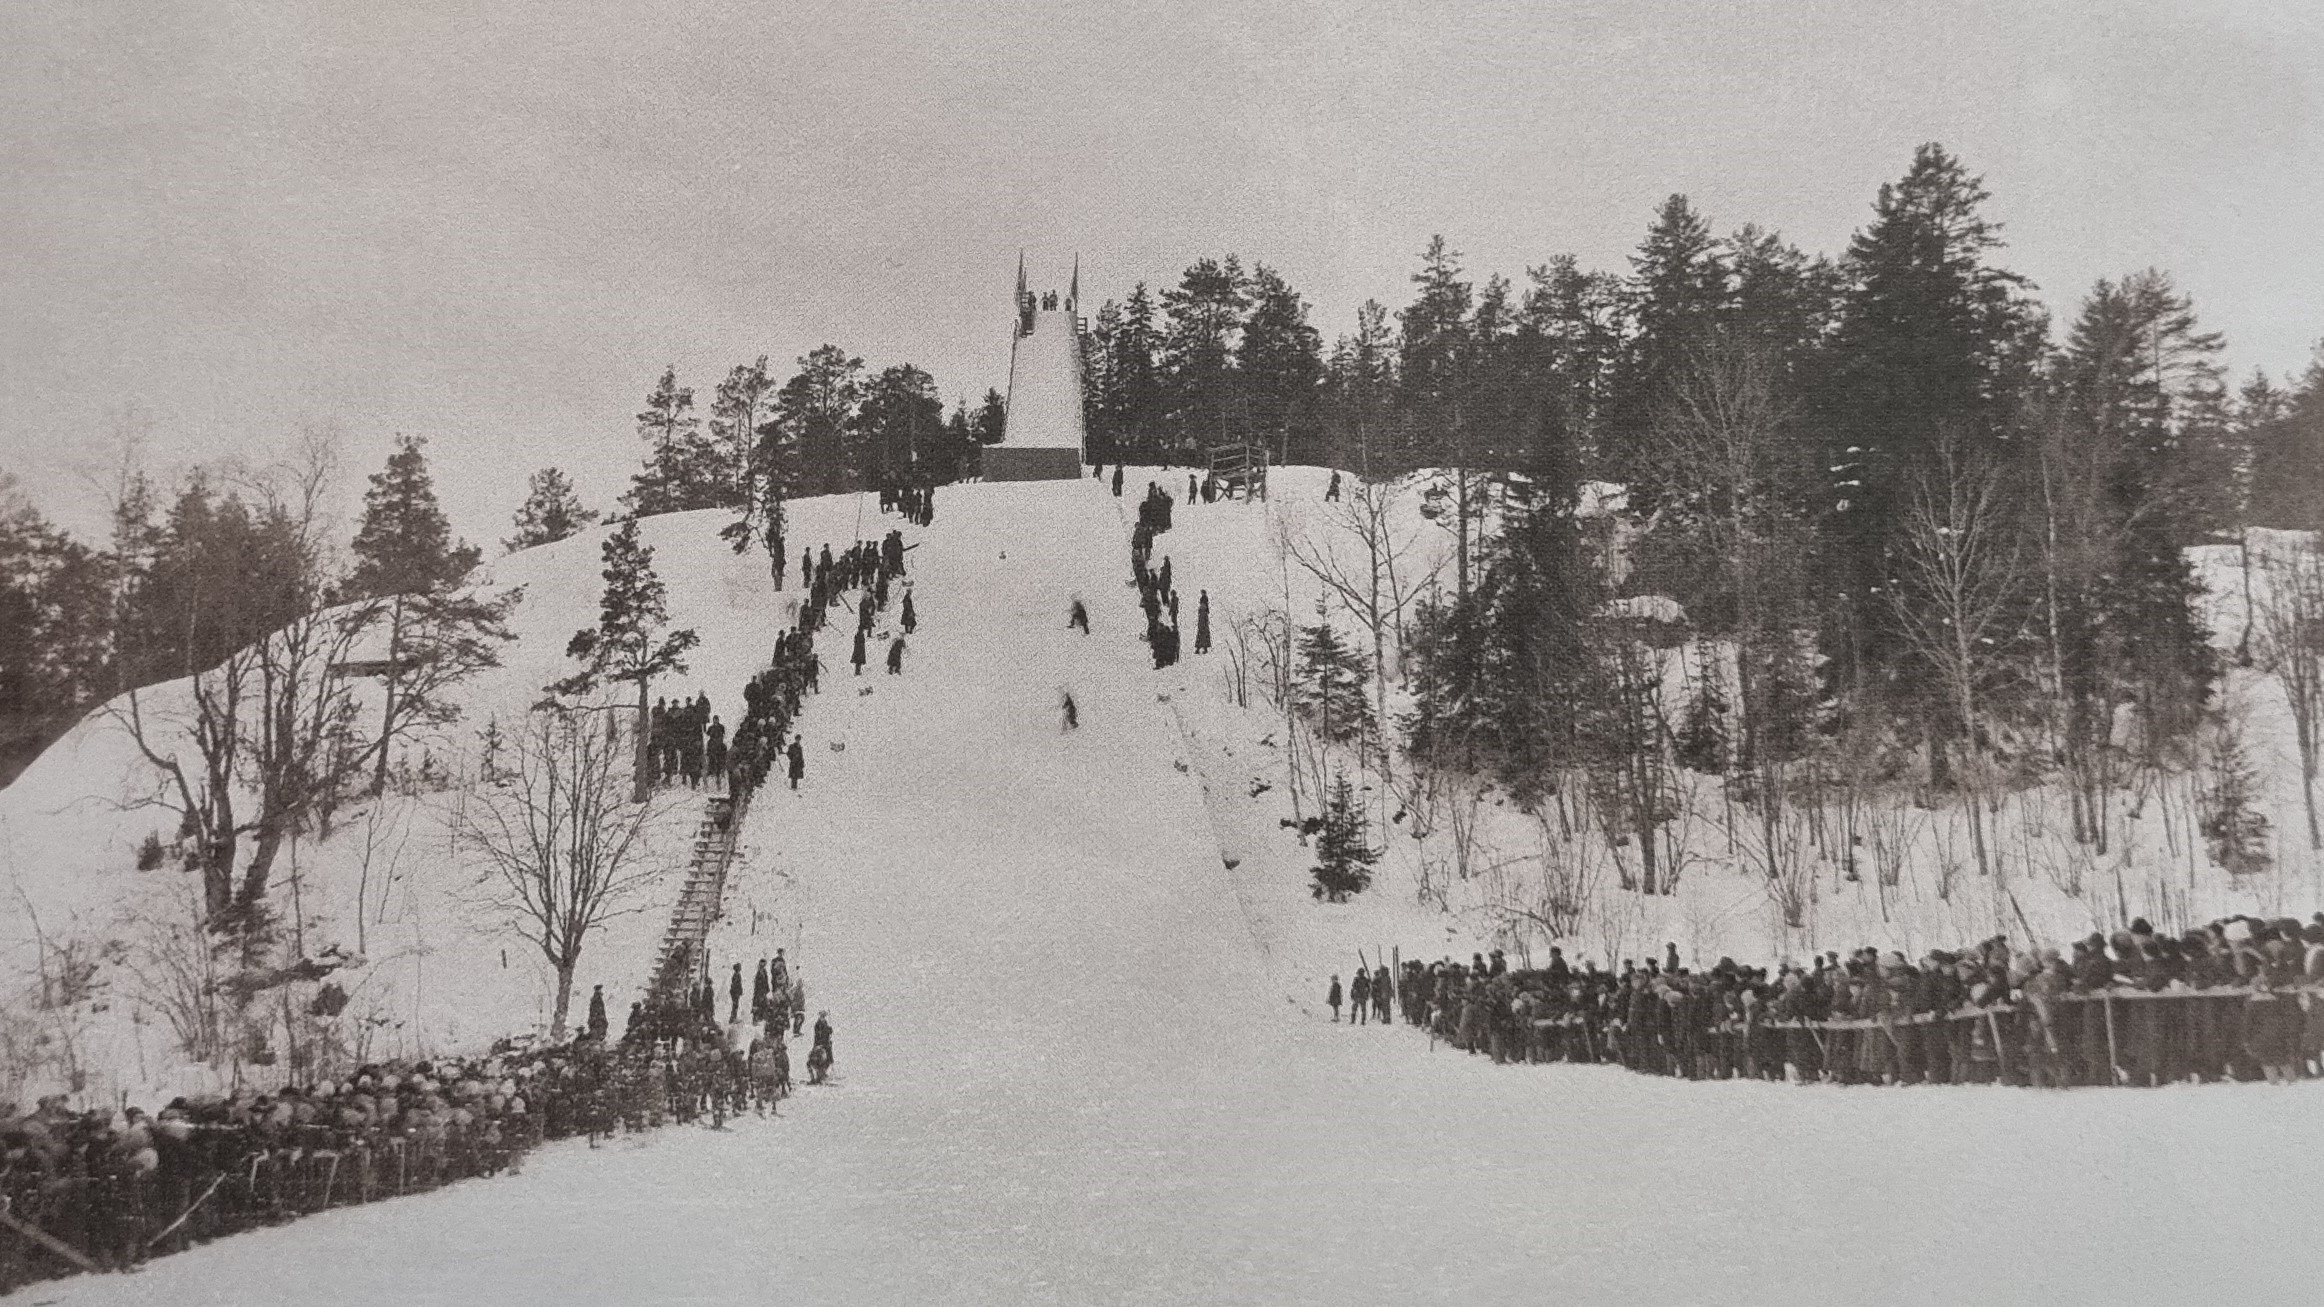 la orterna för backhoppning i Finland under 1920- och 1940-talen.